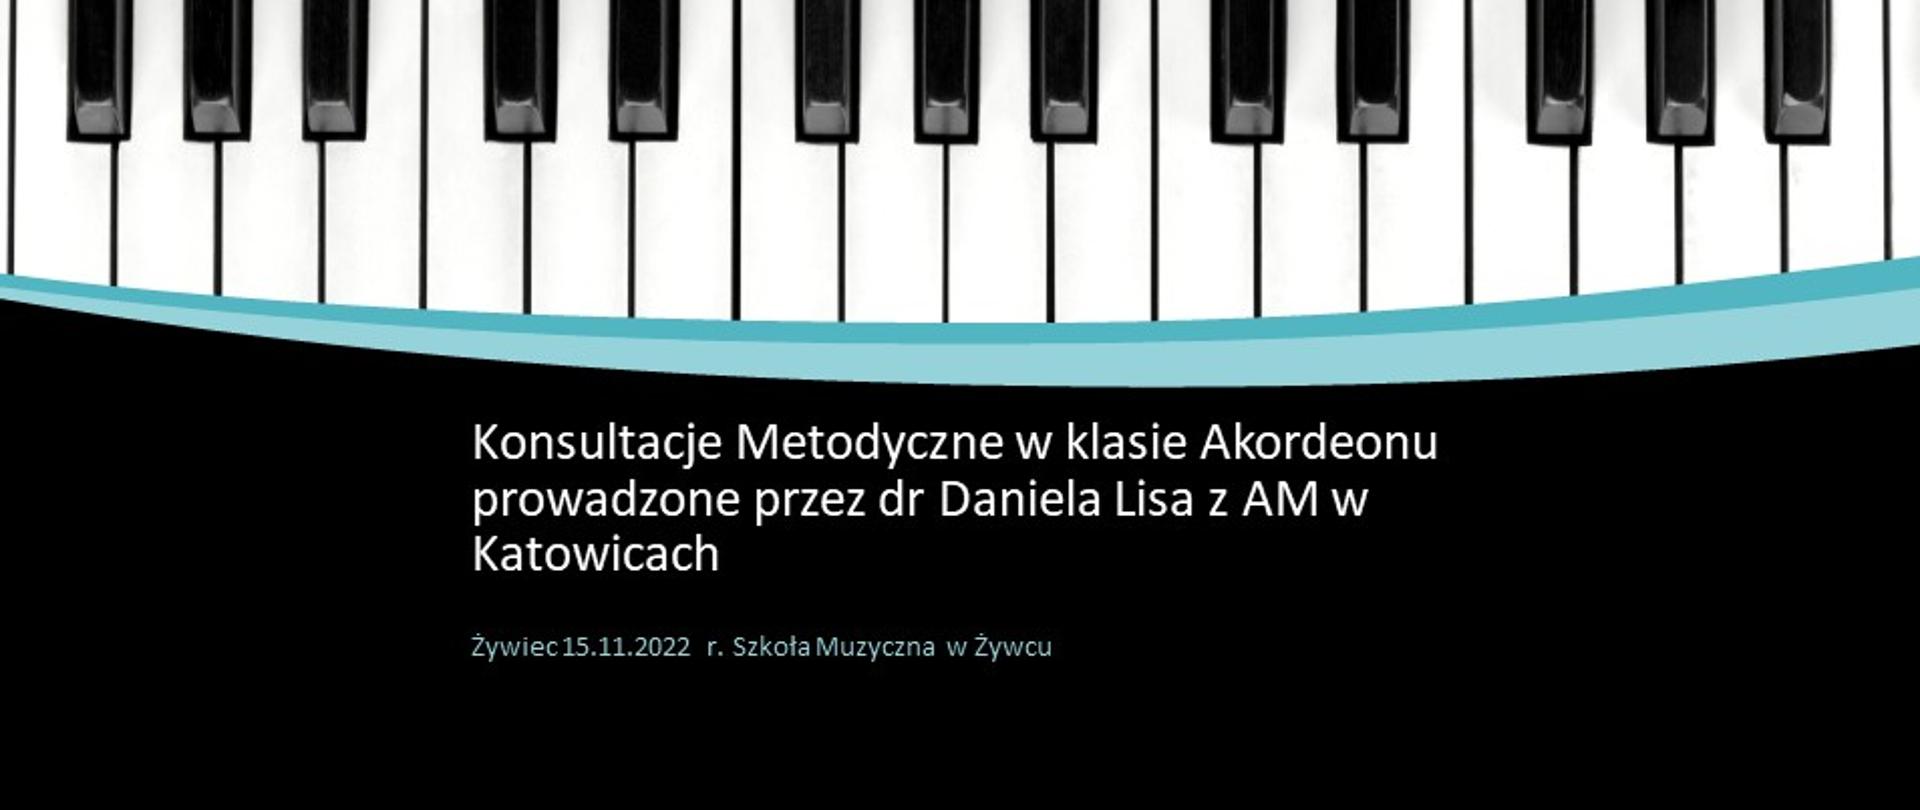 Plakat "Konsultacje Metodyczne w klasie Akordeonu prowadzone przez dr Daniela Lisa z AM w Katowicach, Żywiec 15.11.2022 r. Szkoła Muzyczna w Żywcu